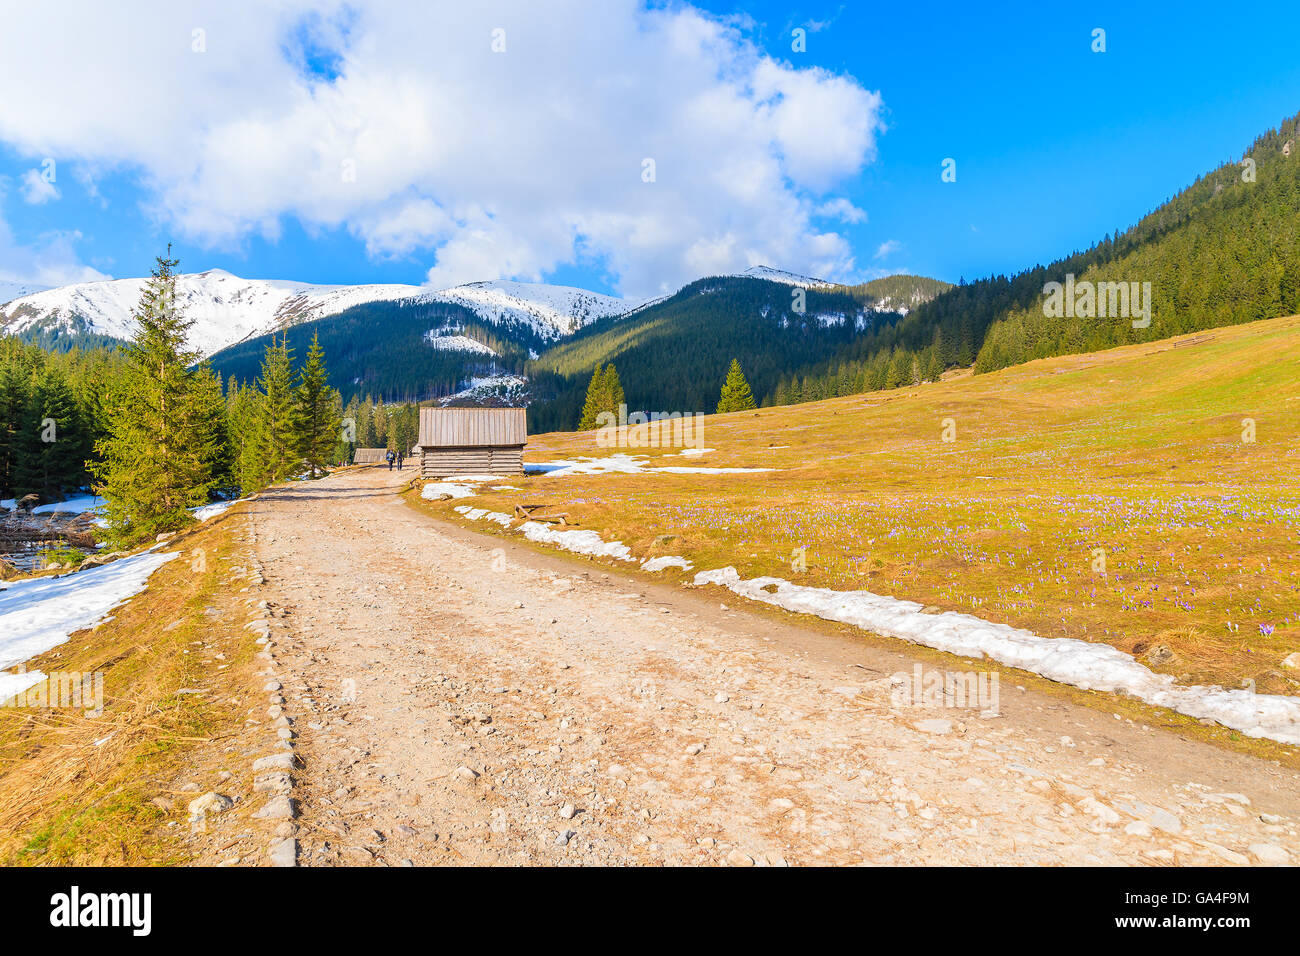 Route de montagne avec blooming crocus fleurs dans la vallée Chocholowska, Tatras, Pologne Banque D'Images